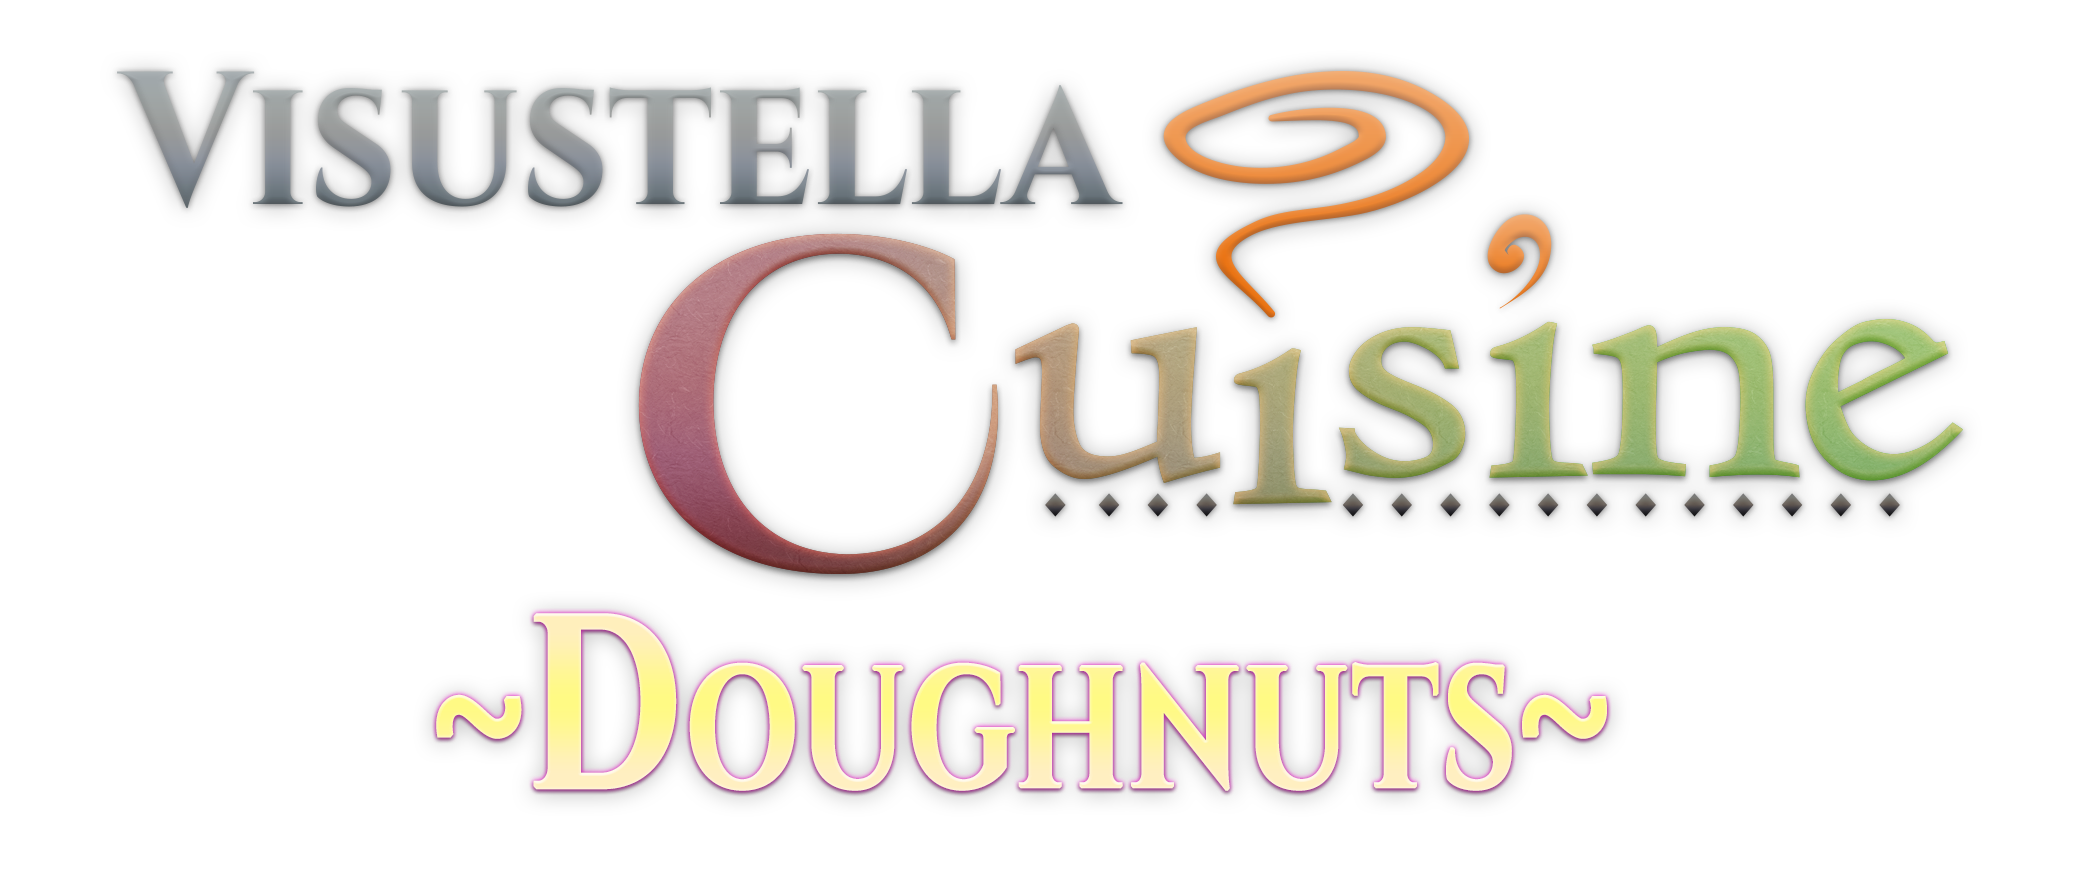 VisuStella Cuisine: Doughnuts